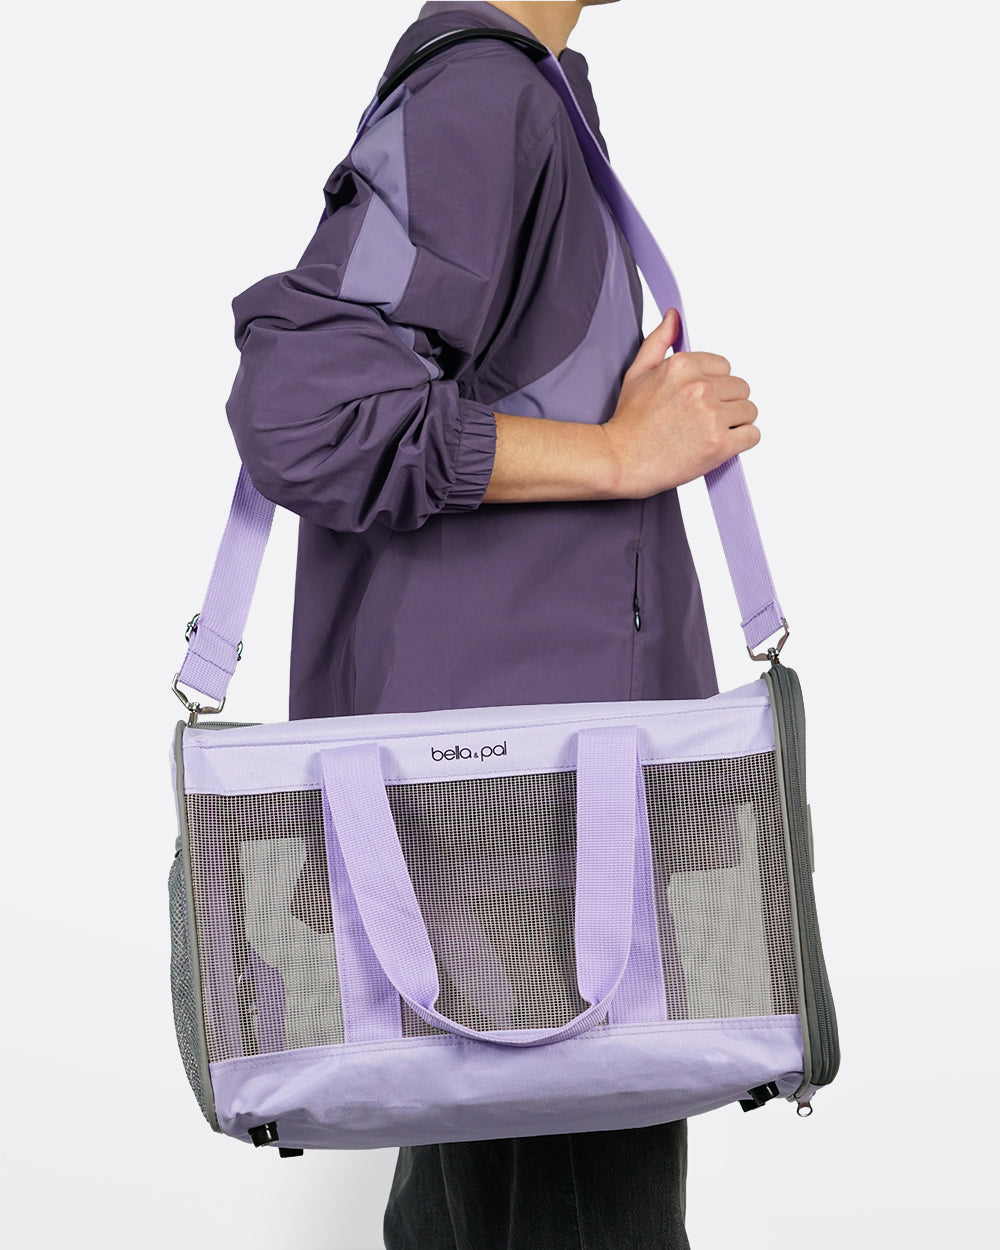 Portable Pet Travel Carrier - Lilac Mist